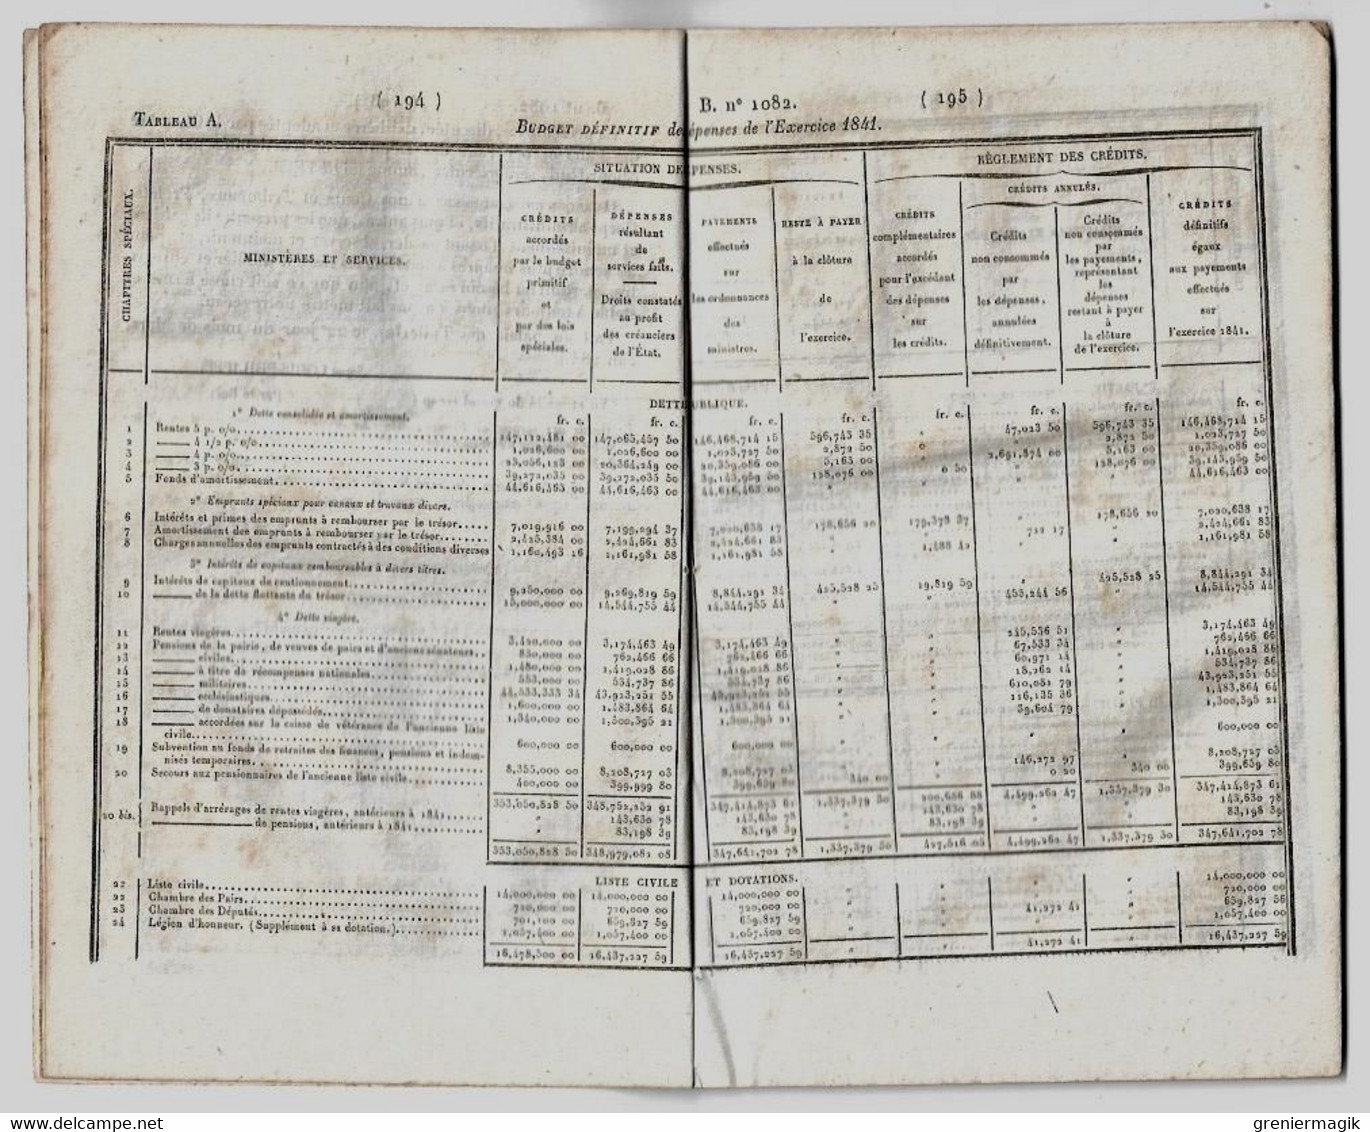 Bulletin Des Lois 1082 1844 Loi Portant Règlement Définitif Du Budget De L'exercice 1841 (Finance) - Décrets & Lois